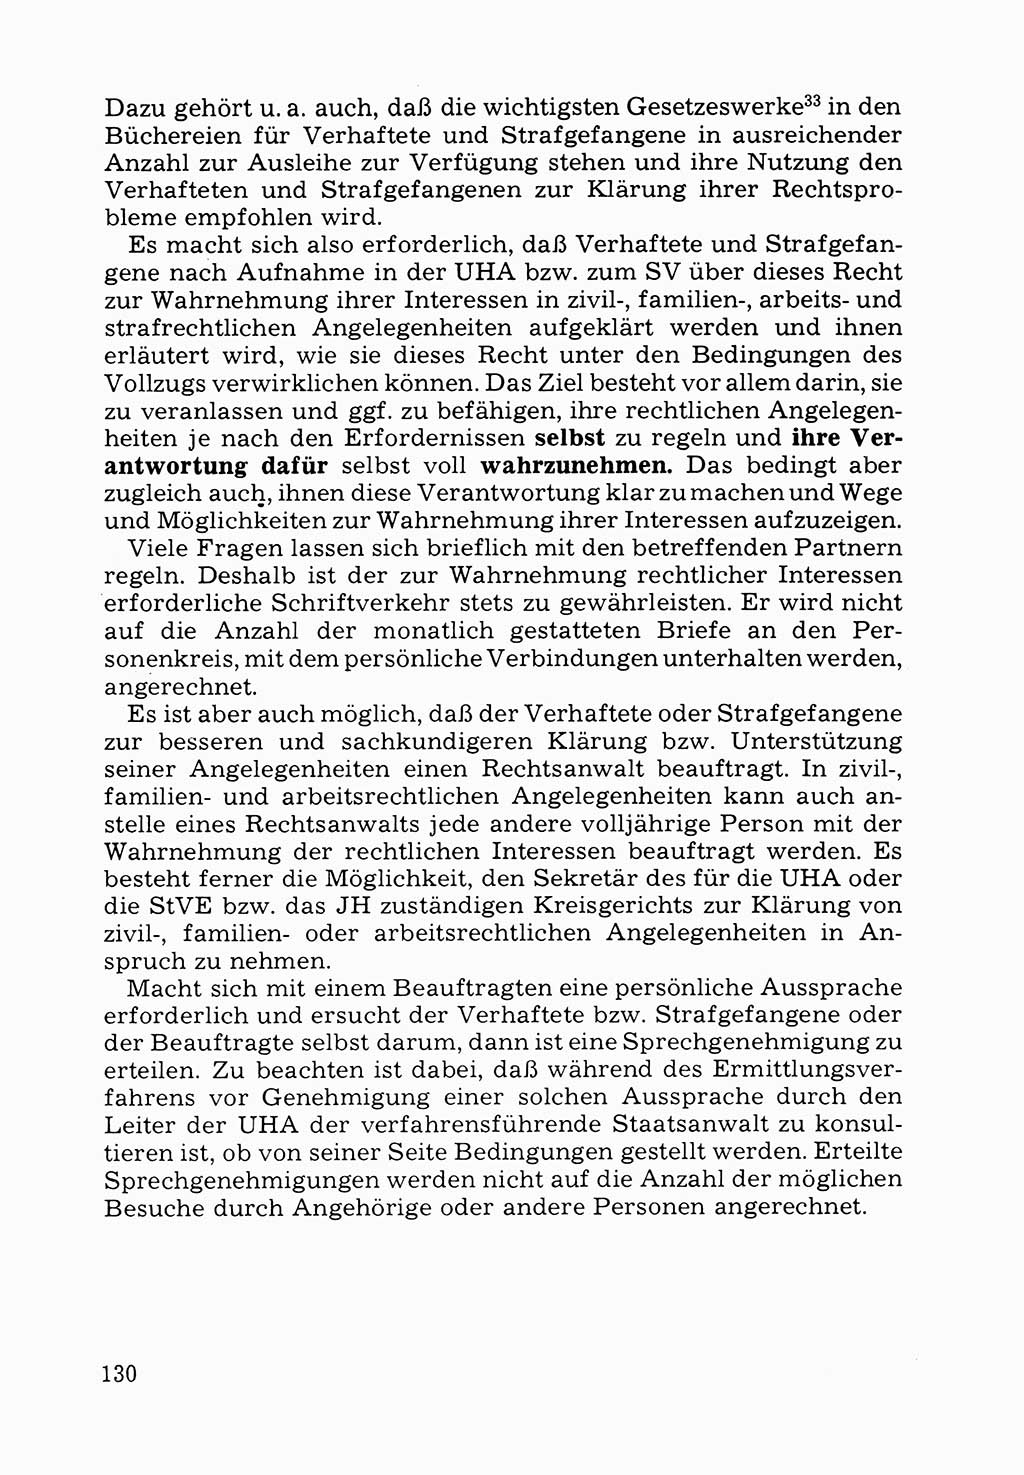 Verwaltungsmäßige Aufgaben beim Vollzug der Untersuchungshaft (U-Haft) sowie der Strafen mit Freiheitsentzug (SV) [Deutsche Demokratische Republik (DDR)] 1980, Seite 130 (Aufg. Vollz. U-Haft SV DDR 1980, S. 130)